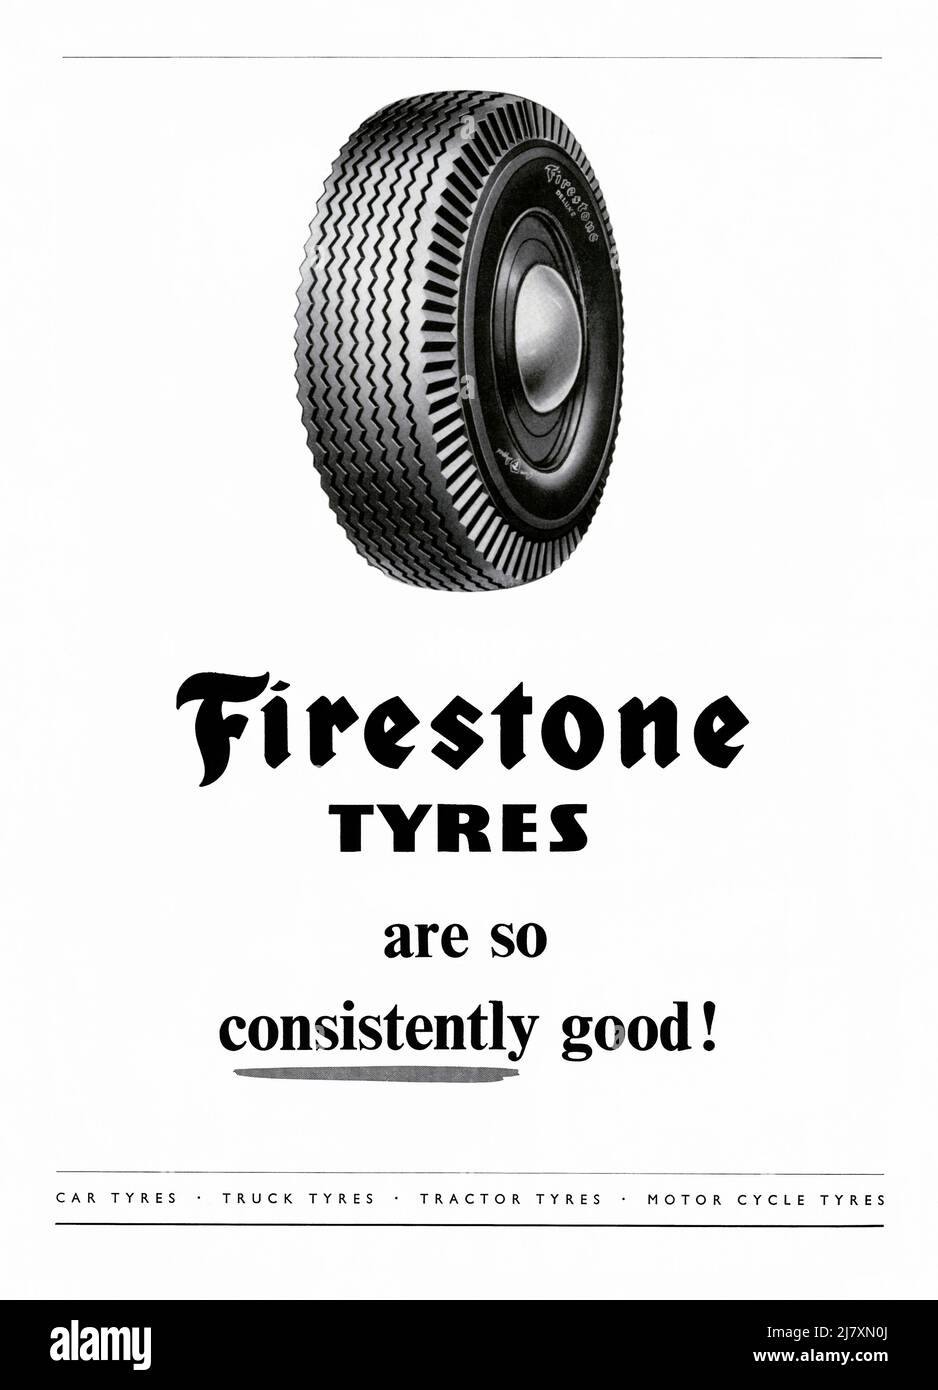 Un annuncio del 1953 per pneumatici Firestone. L'annuncio è apparso in una rivista pubblicata nel Regno Unito nel giugno di quell'anno – il numero è stato un'edizione speciale, pubblicata per segnare l'incoronazione della Regina Elisabetta. L'annuncio menziona i suoi numerosi mercati: Auto, camion, trattori e pneumatici per motociclette. Firestone Tire and Rubber Company è una società americana di pneumatici fondata da Harvey Firestone nel 1900. È diventato il fornitore originale di Ford Motor Company automobili. Nel 1988 l'azienda è stata venduta alla Japanese Bridgestone Corporation – grafica vintage 1950s per uso editoriale. Foto Stock